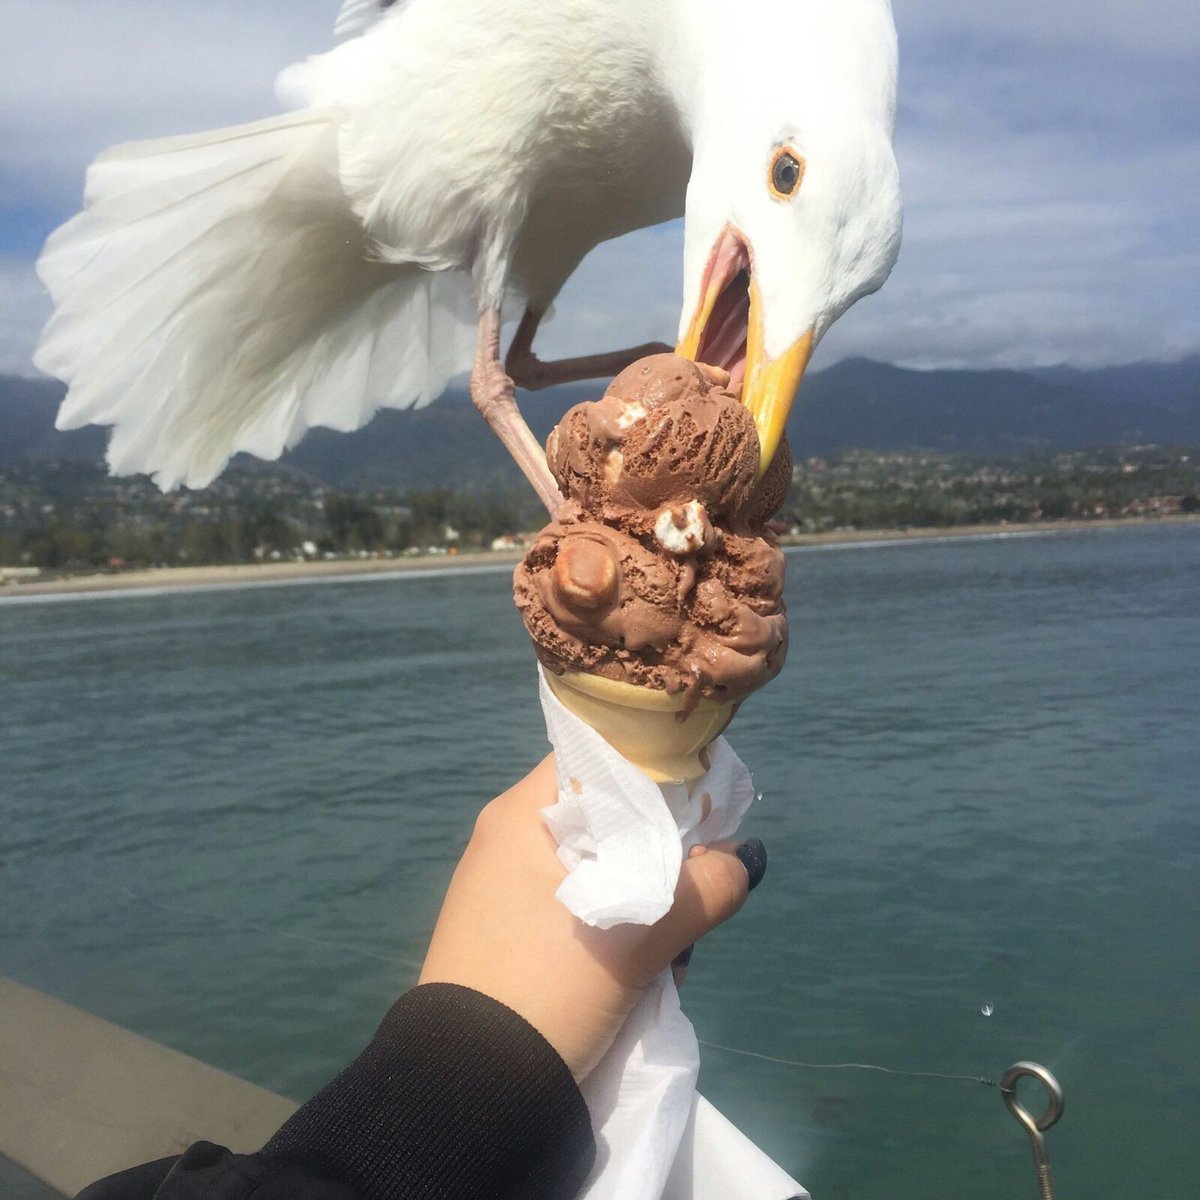 Bird on ice cream